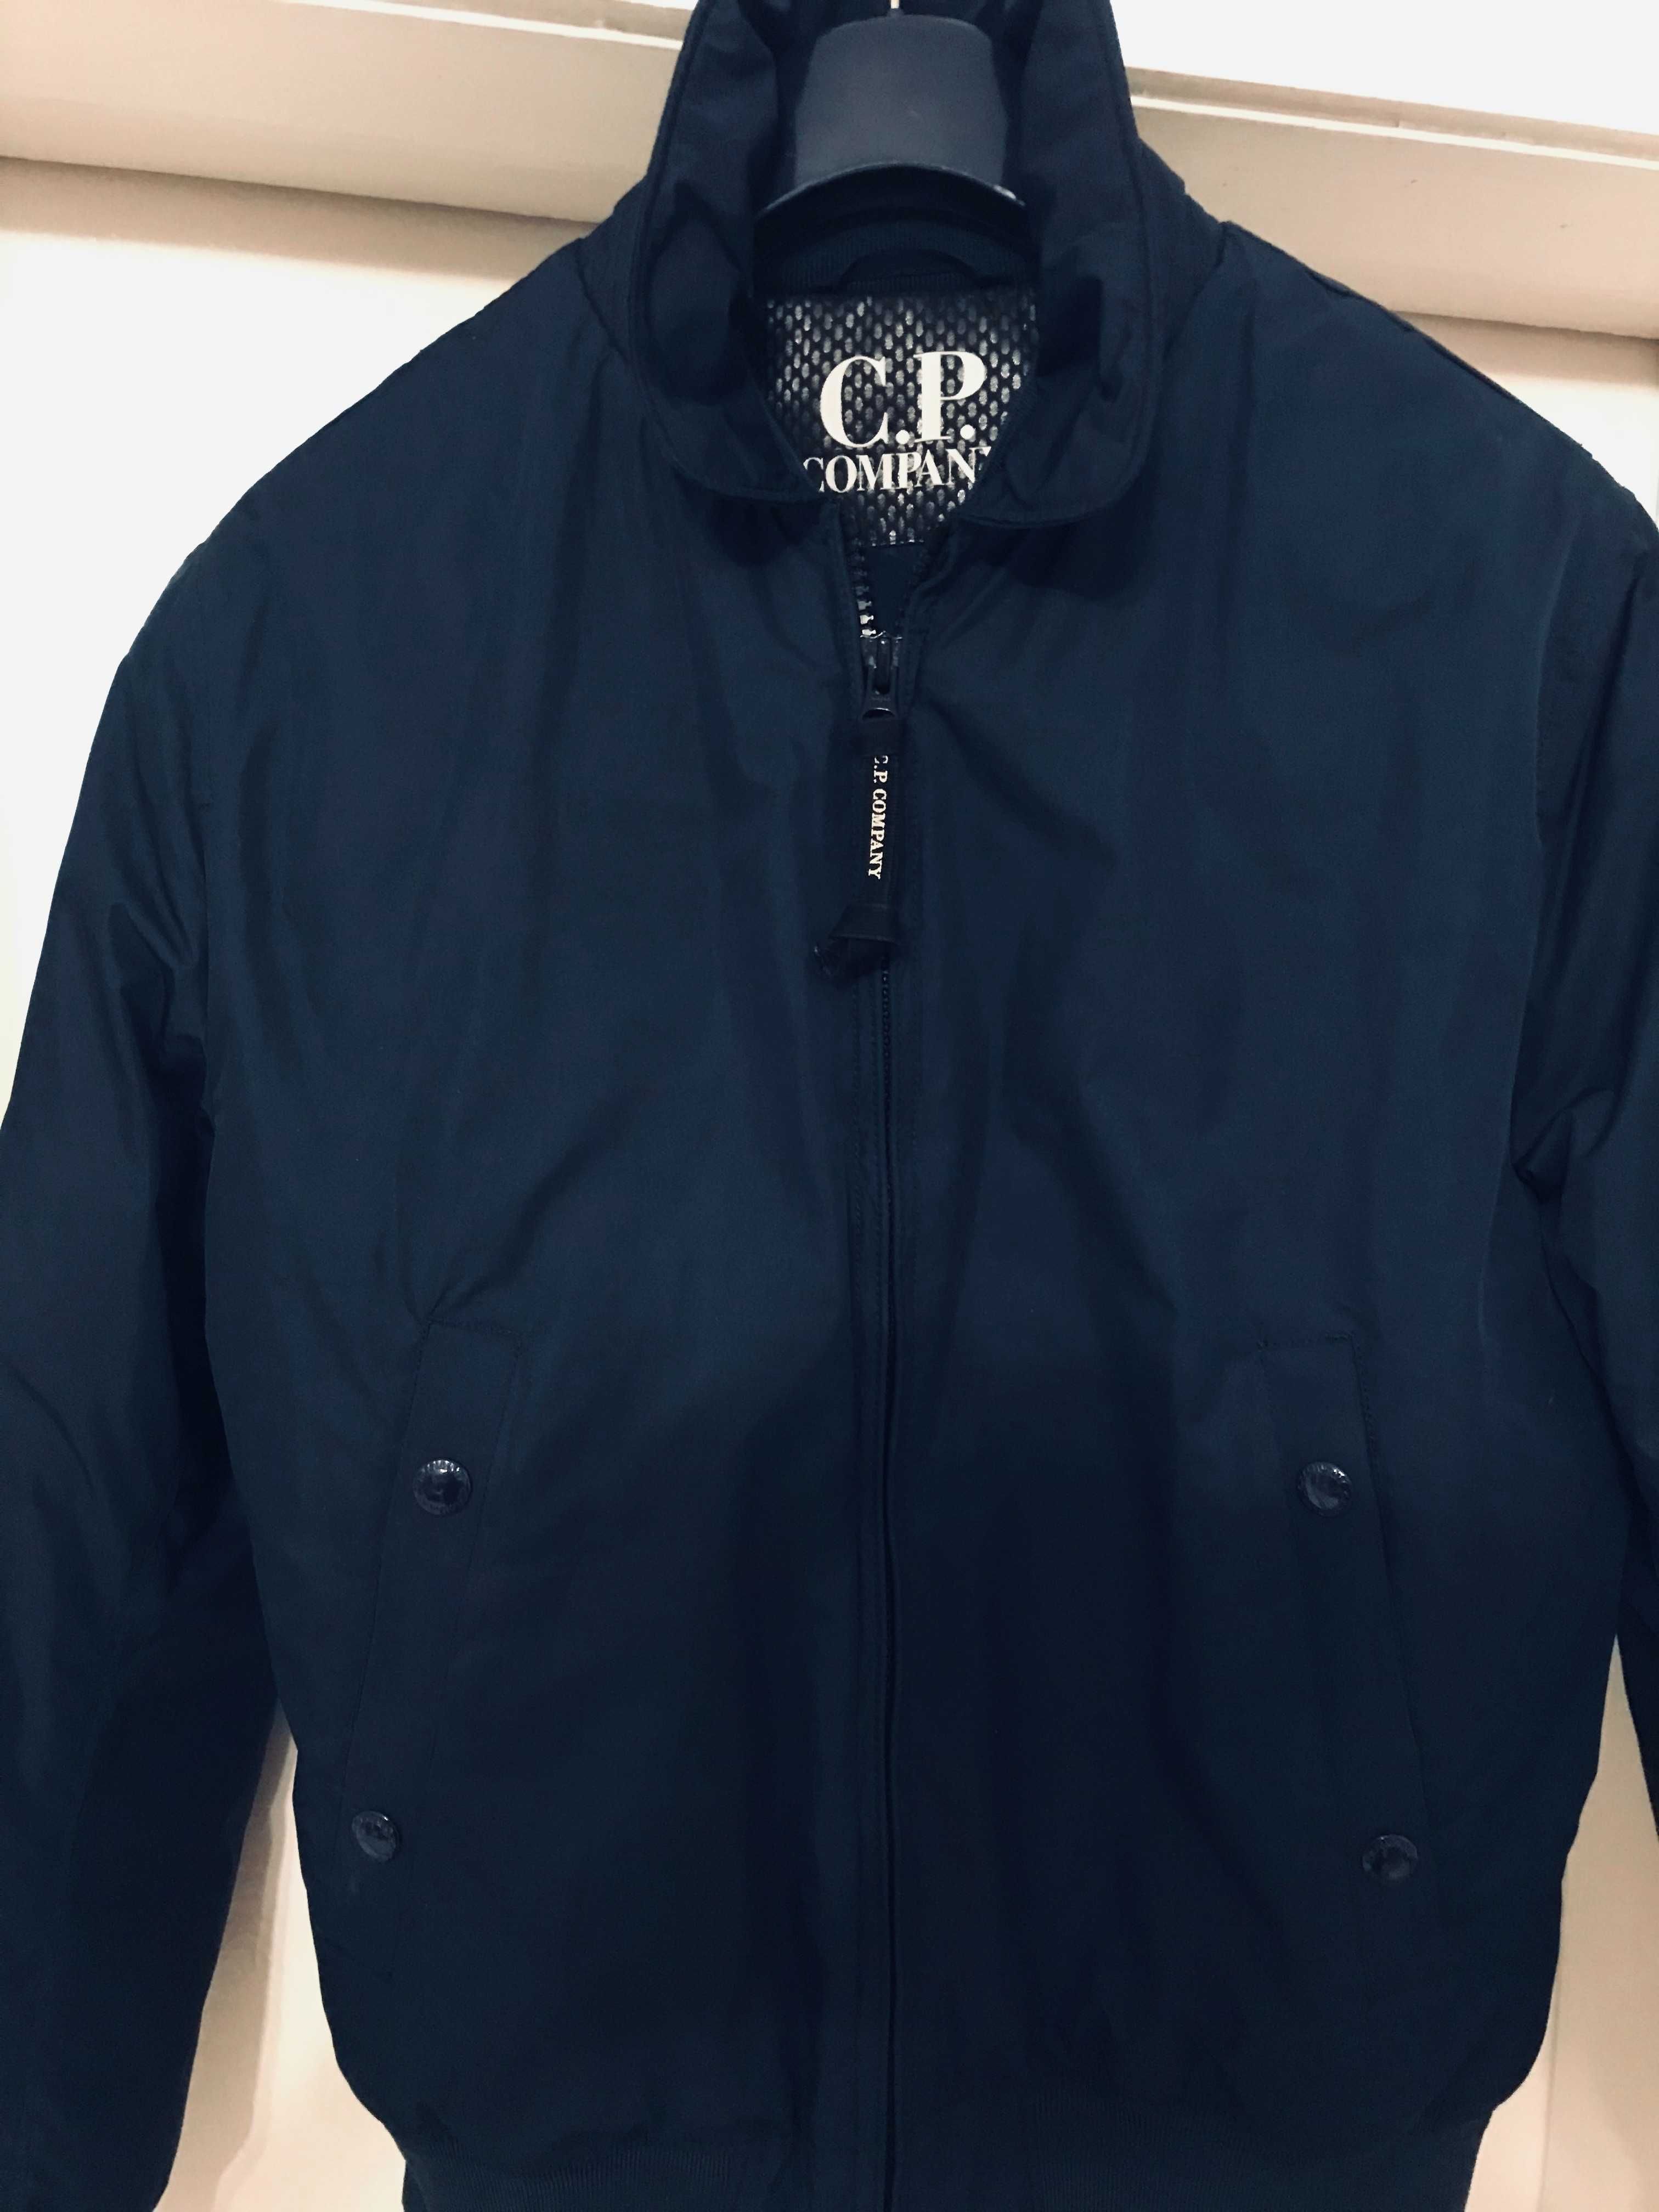 C.P.company  jacket